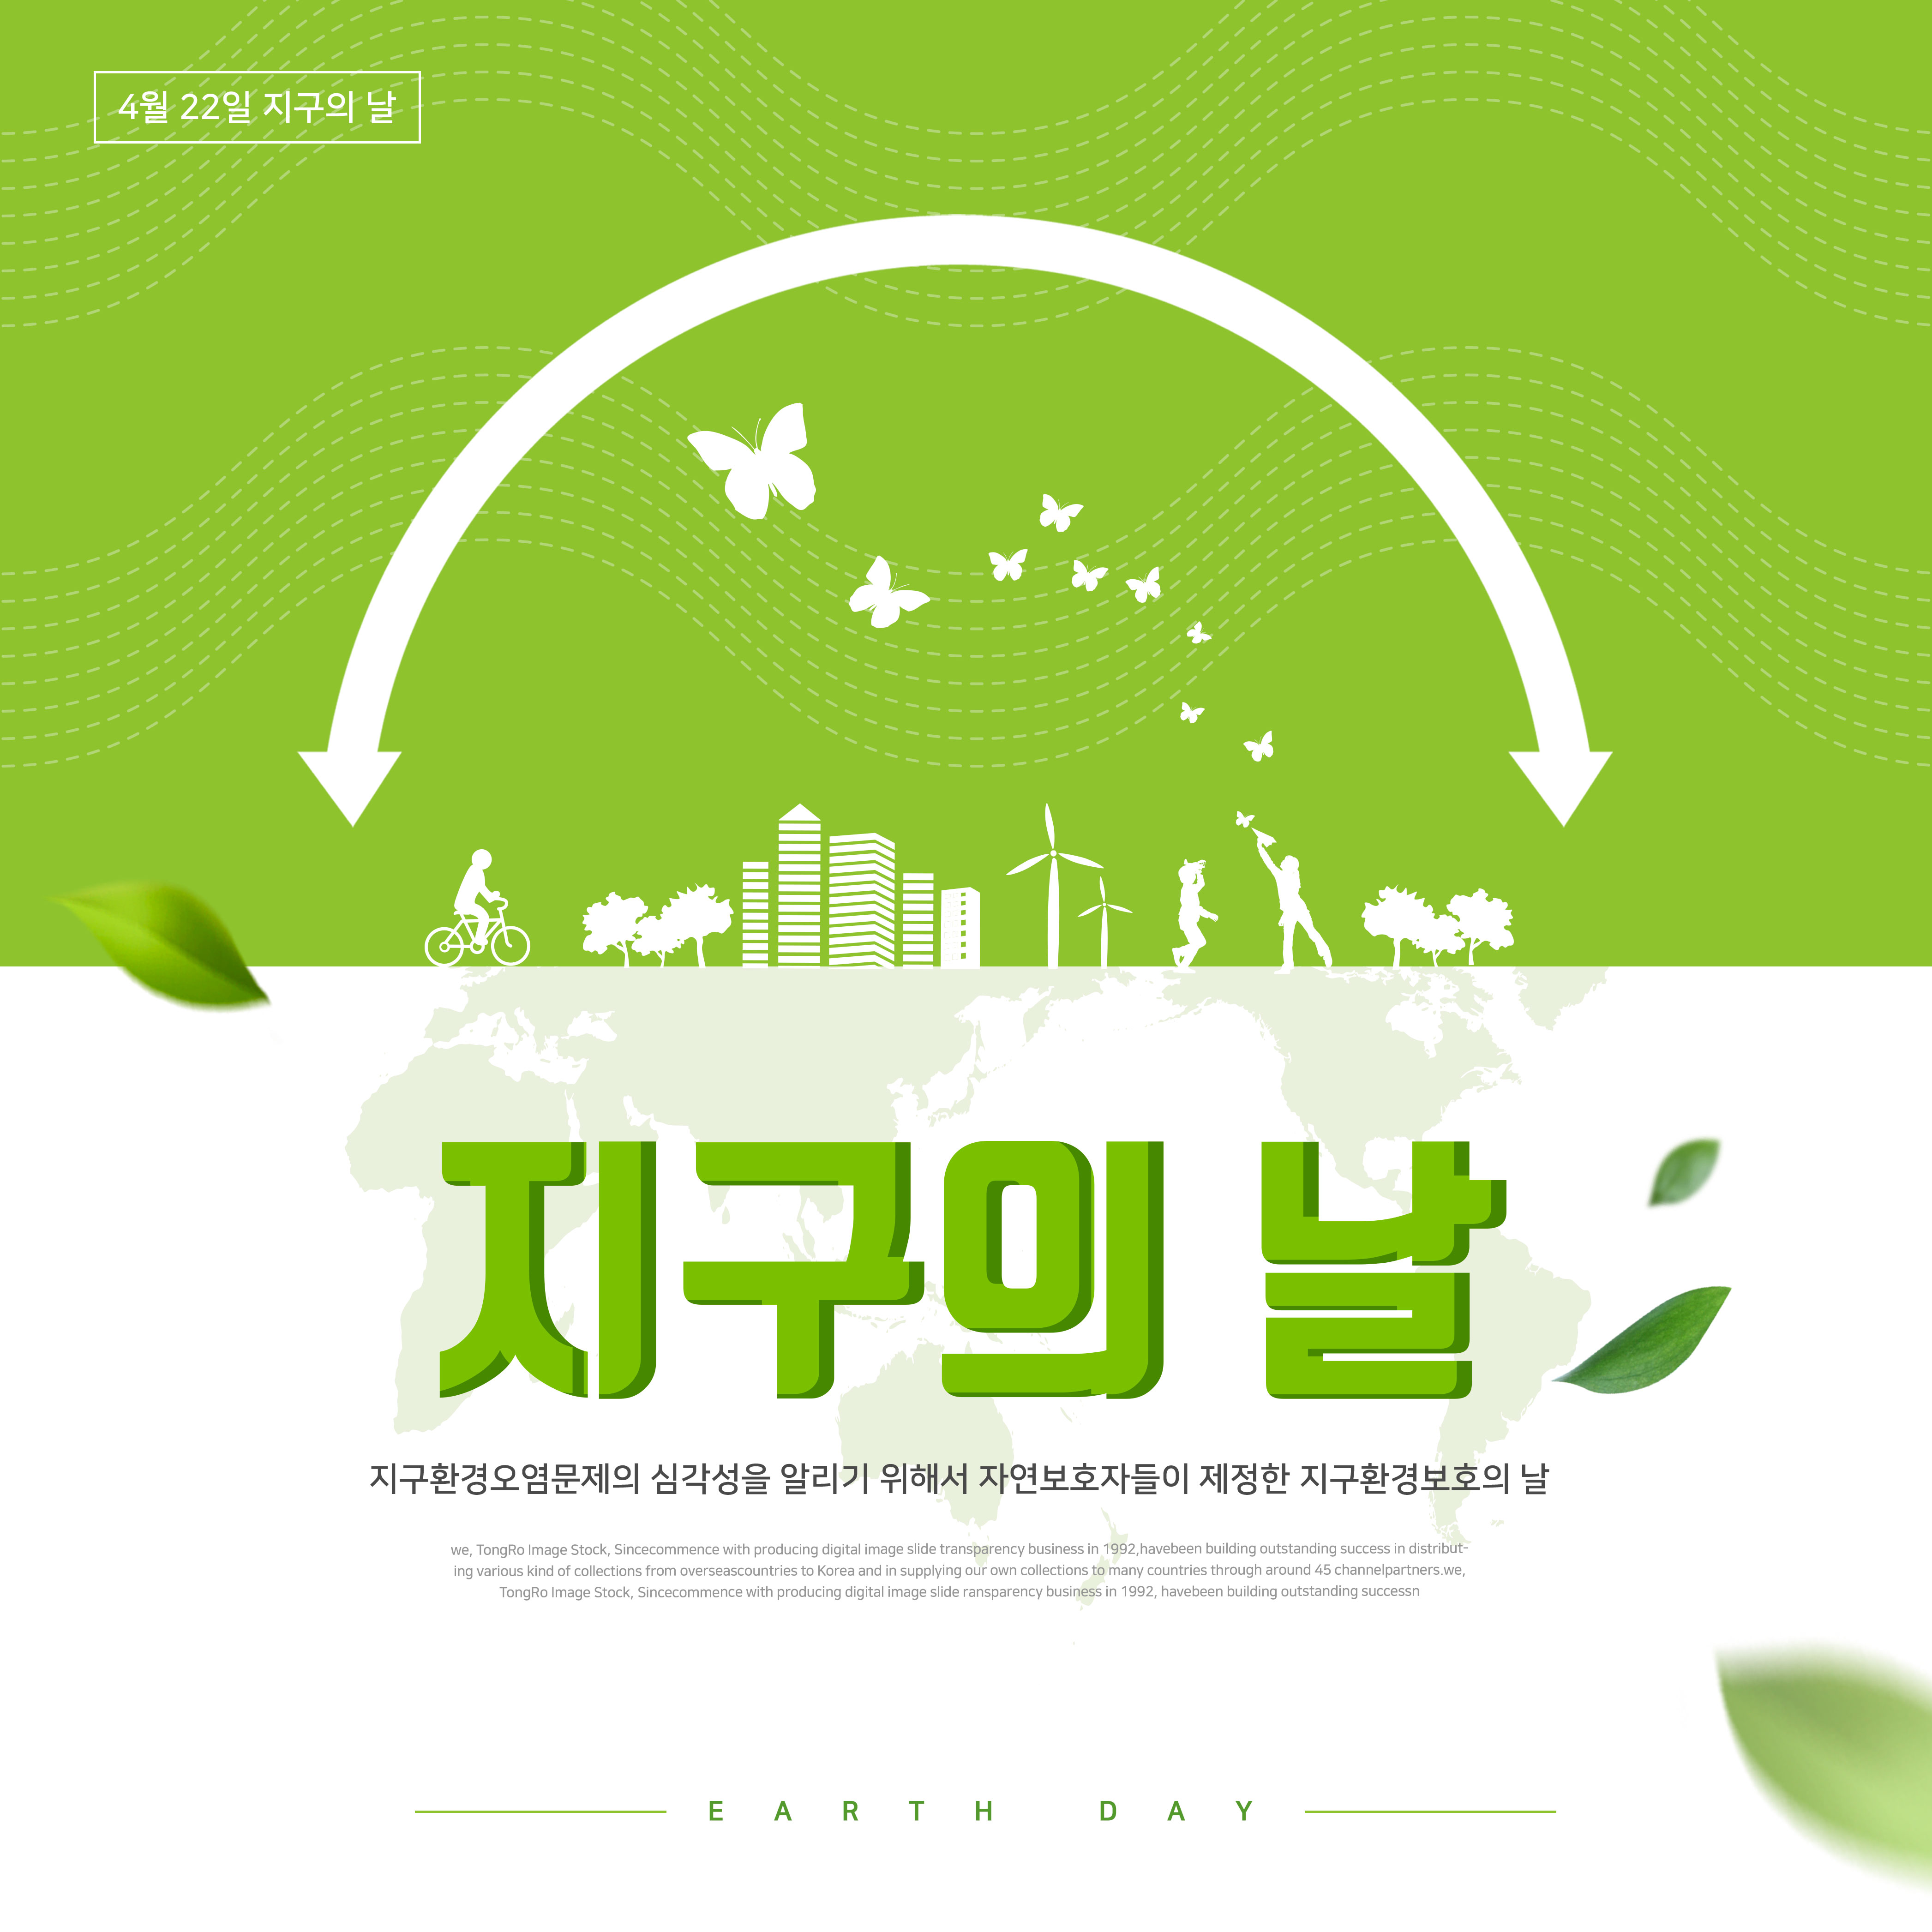 地球环境保护日绿色主题海报PSD素材第一素材精选韩国素材插图